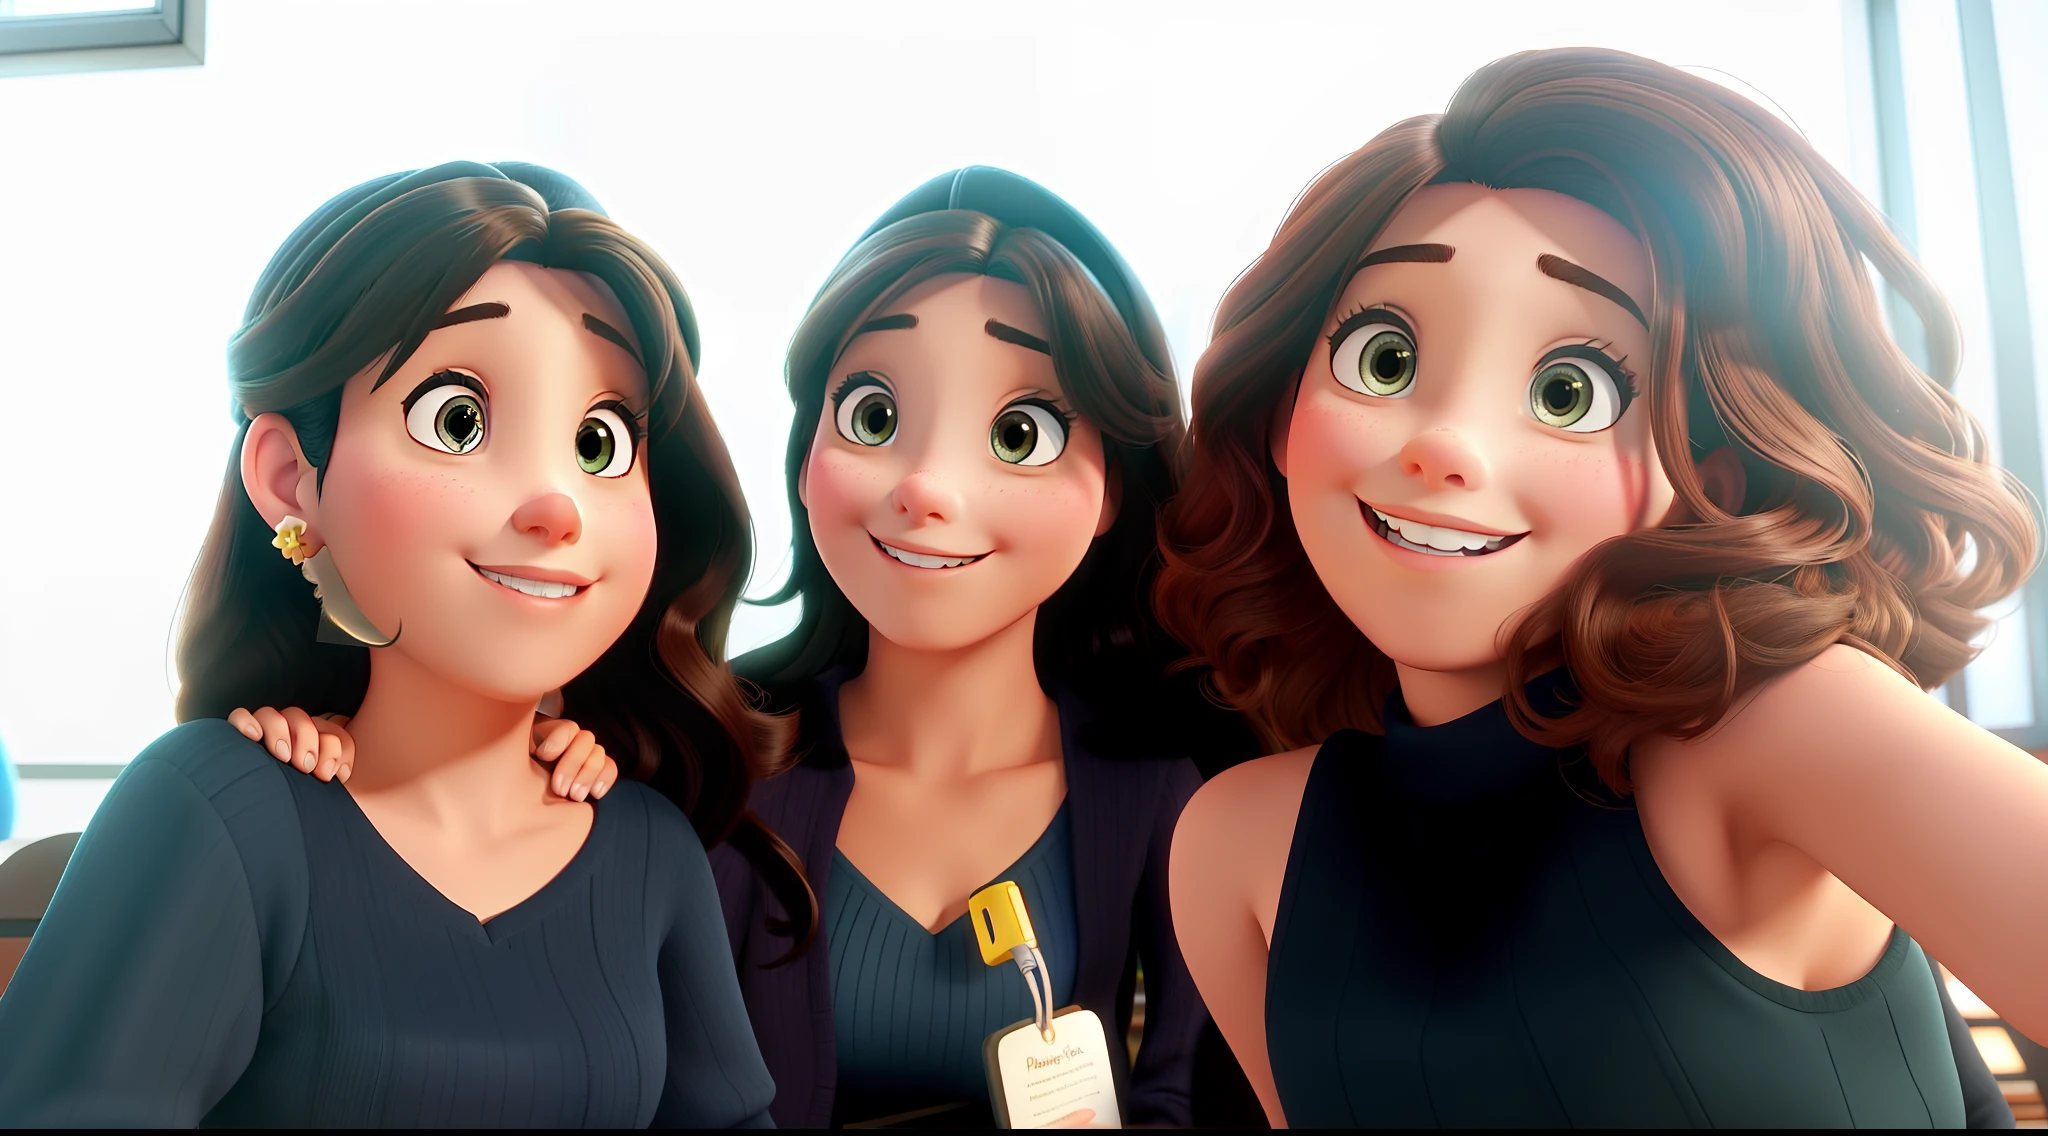 Três mulheres morenas estilo Disney Pixar, alta qualidade, melhor qualidade, pano de fundo biblioteca